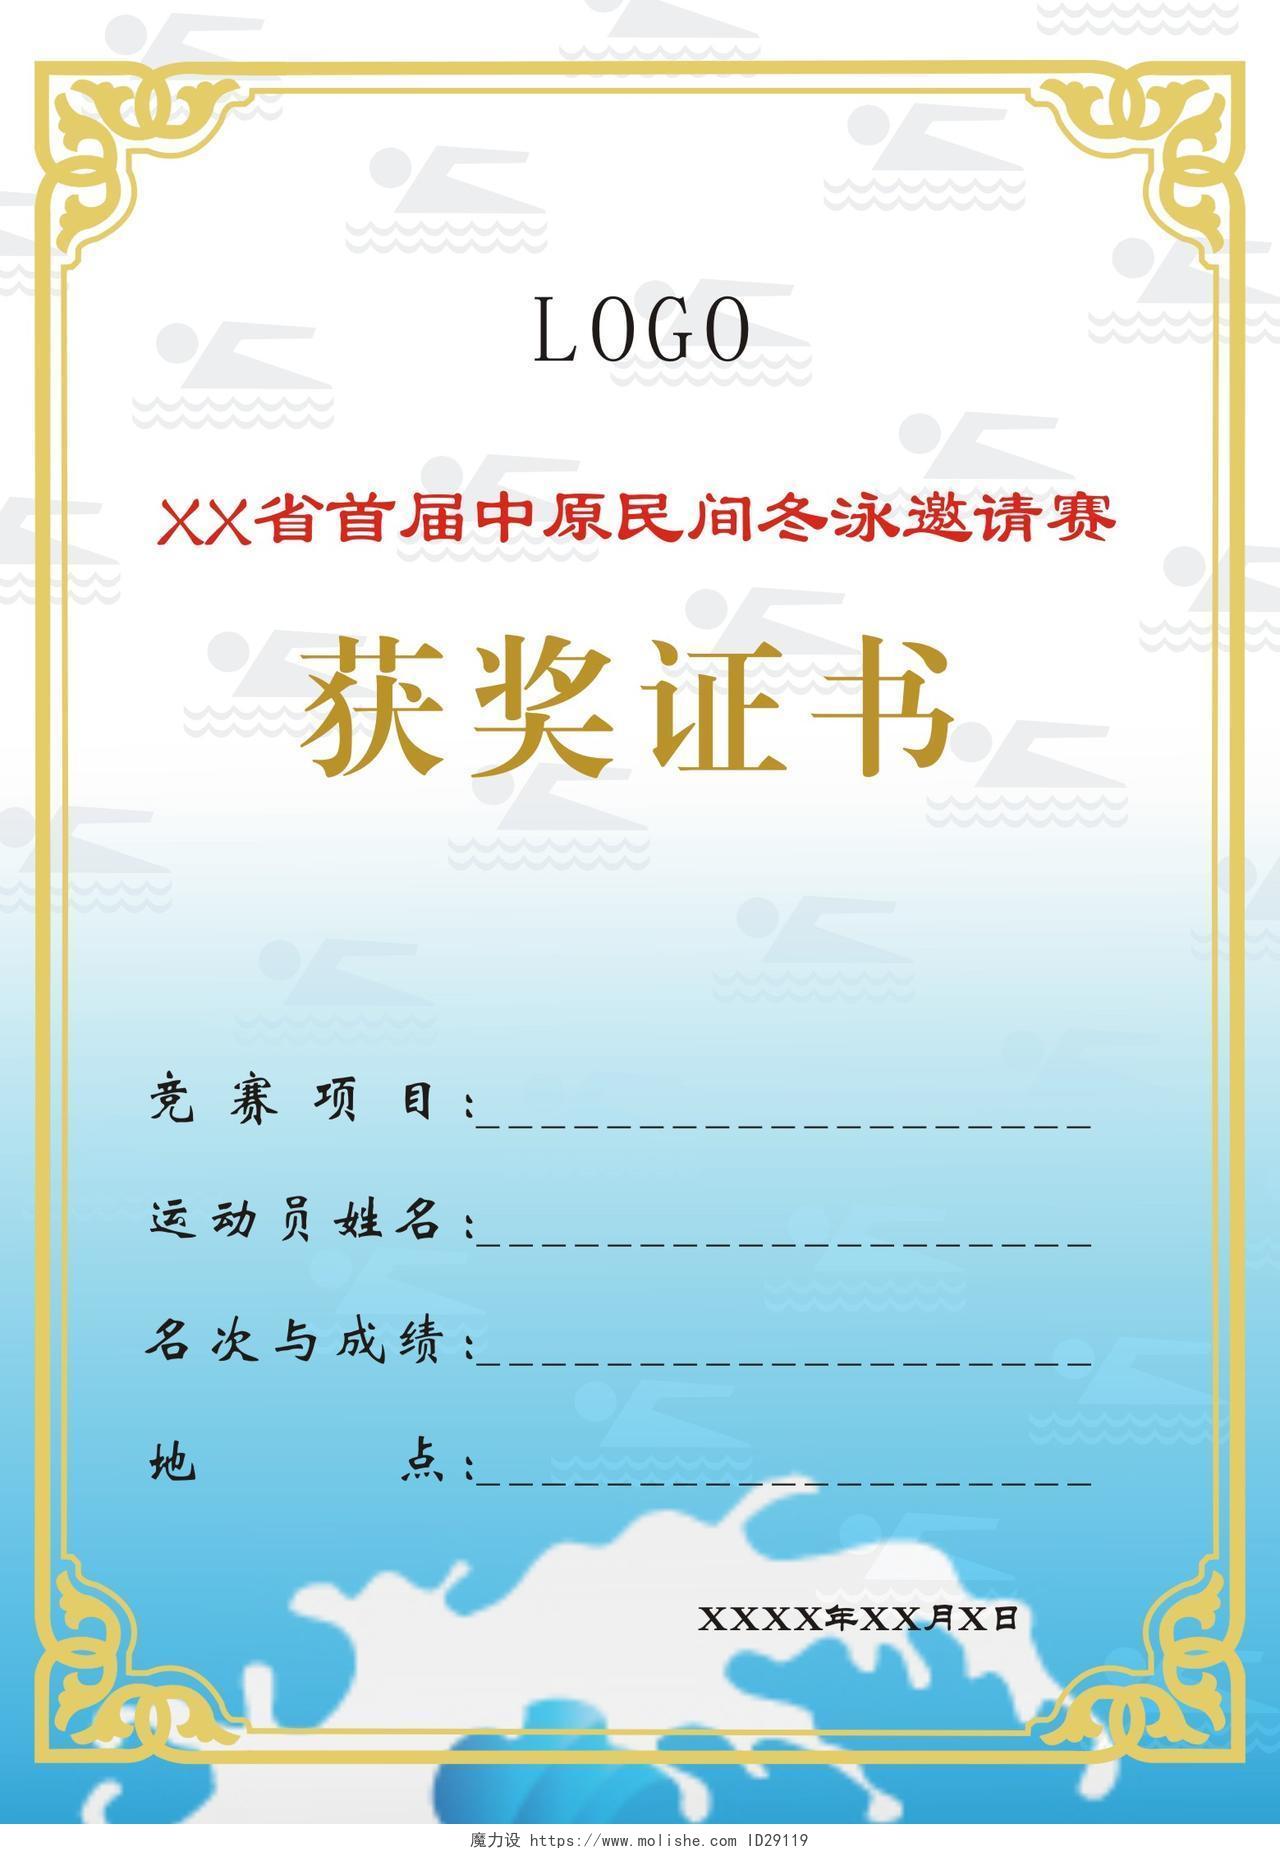 中原民间冬泳邀请赛获奖证书